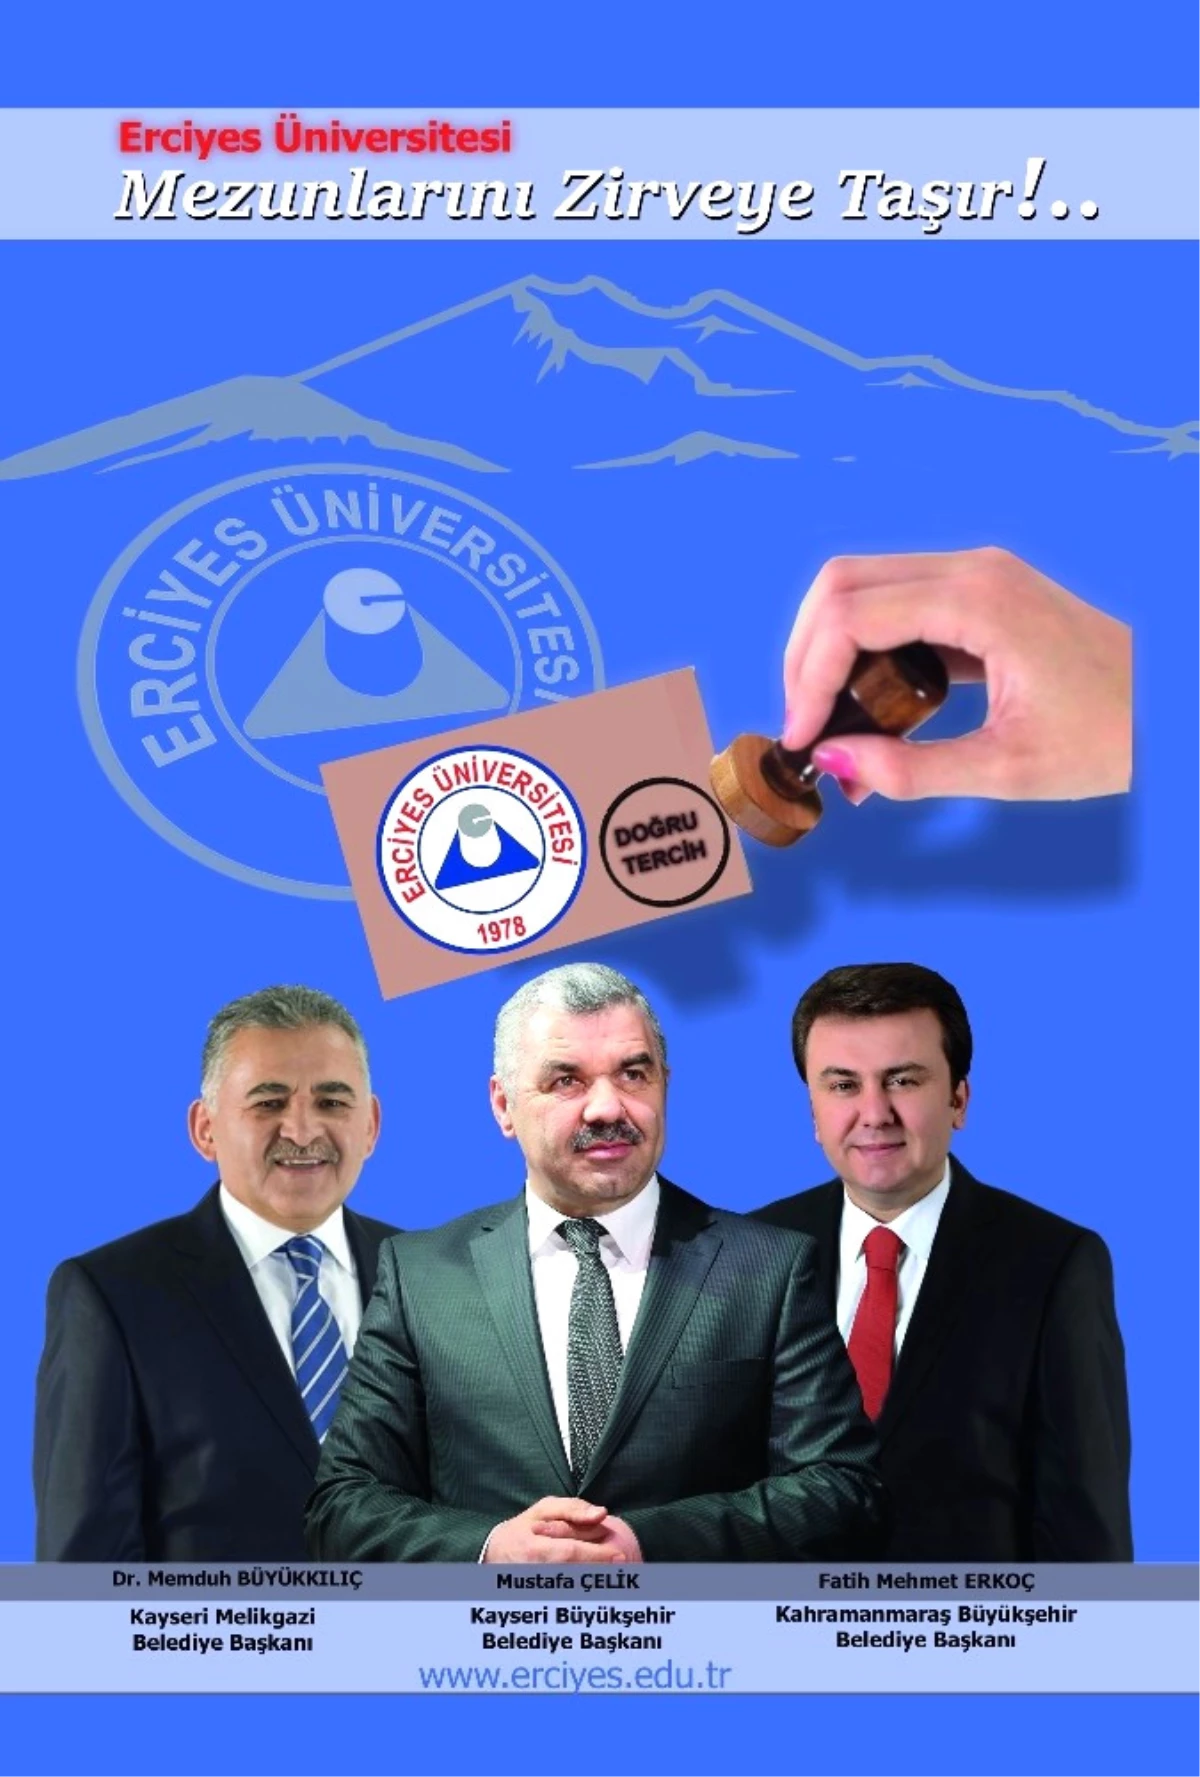 Başarılılar Erciyes Üniversitesinden